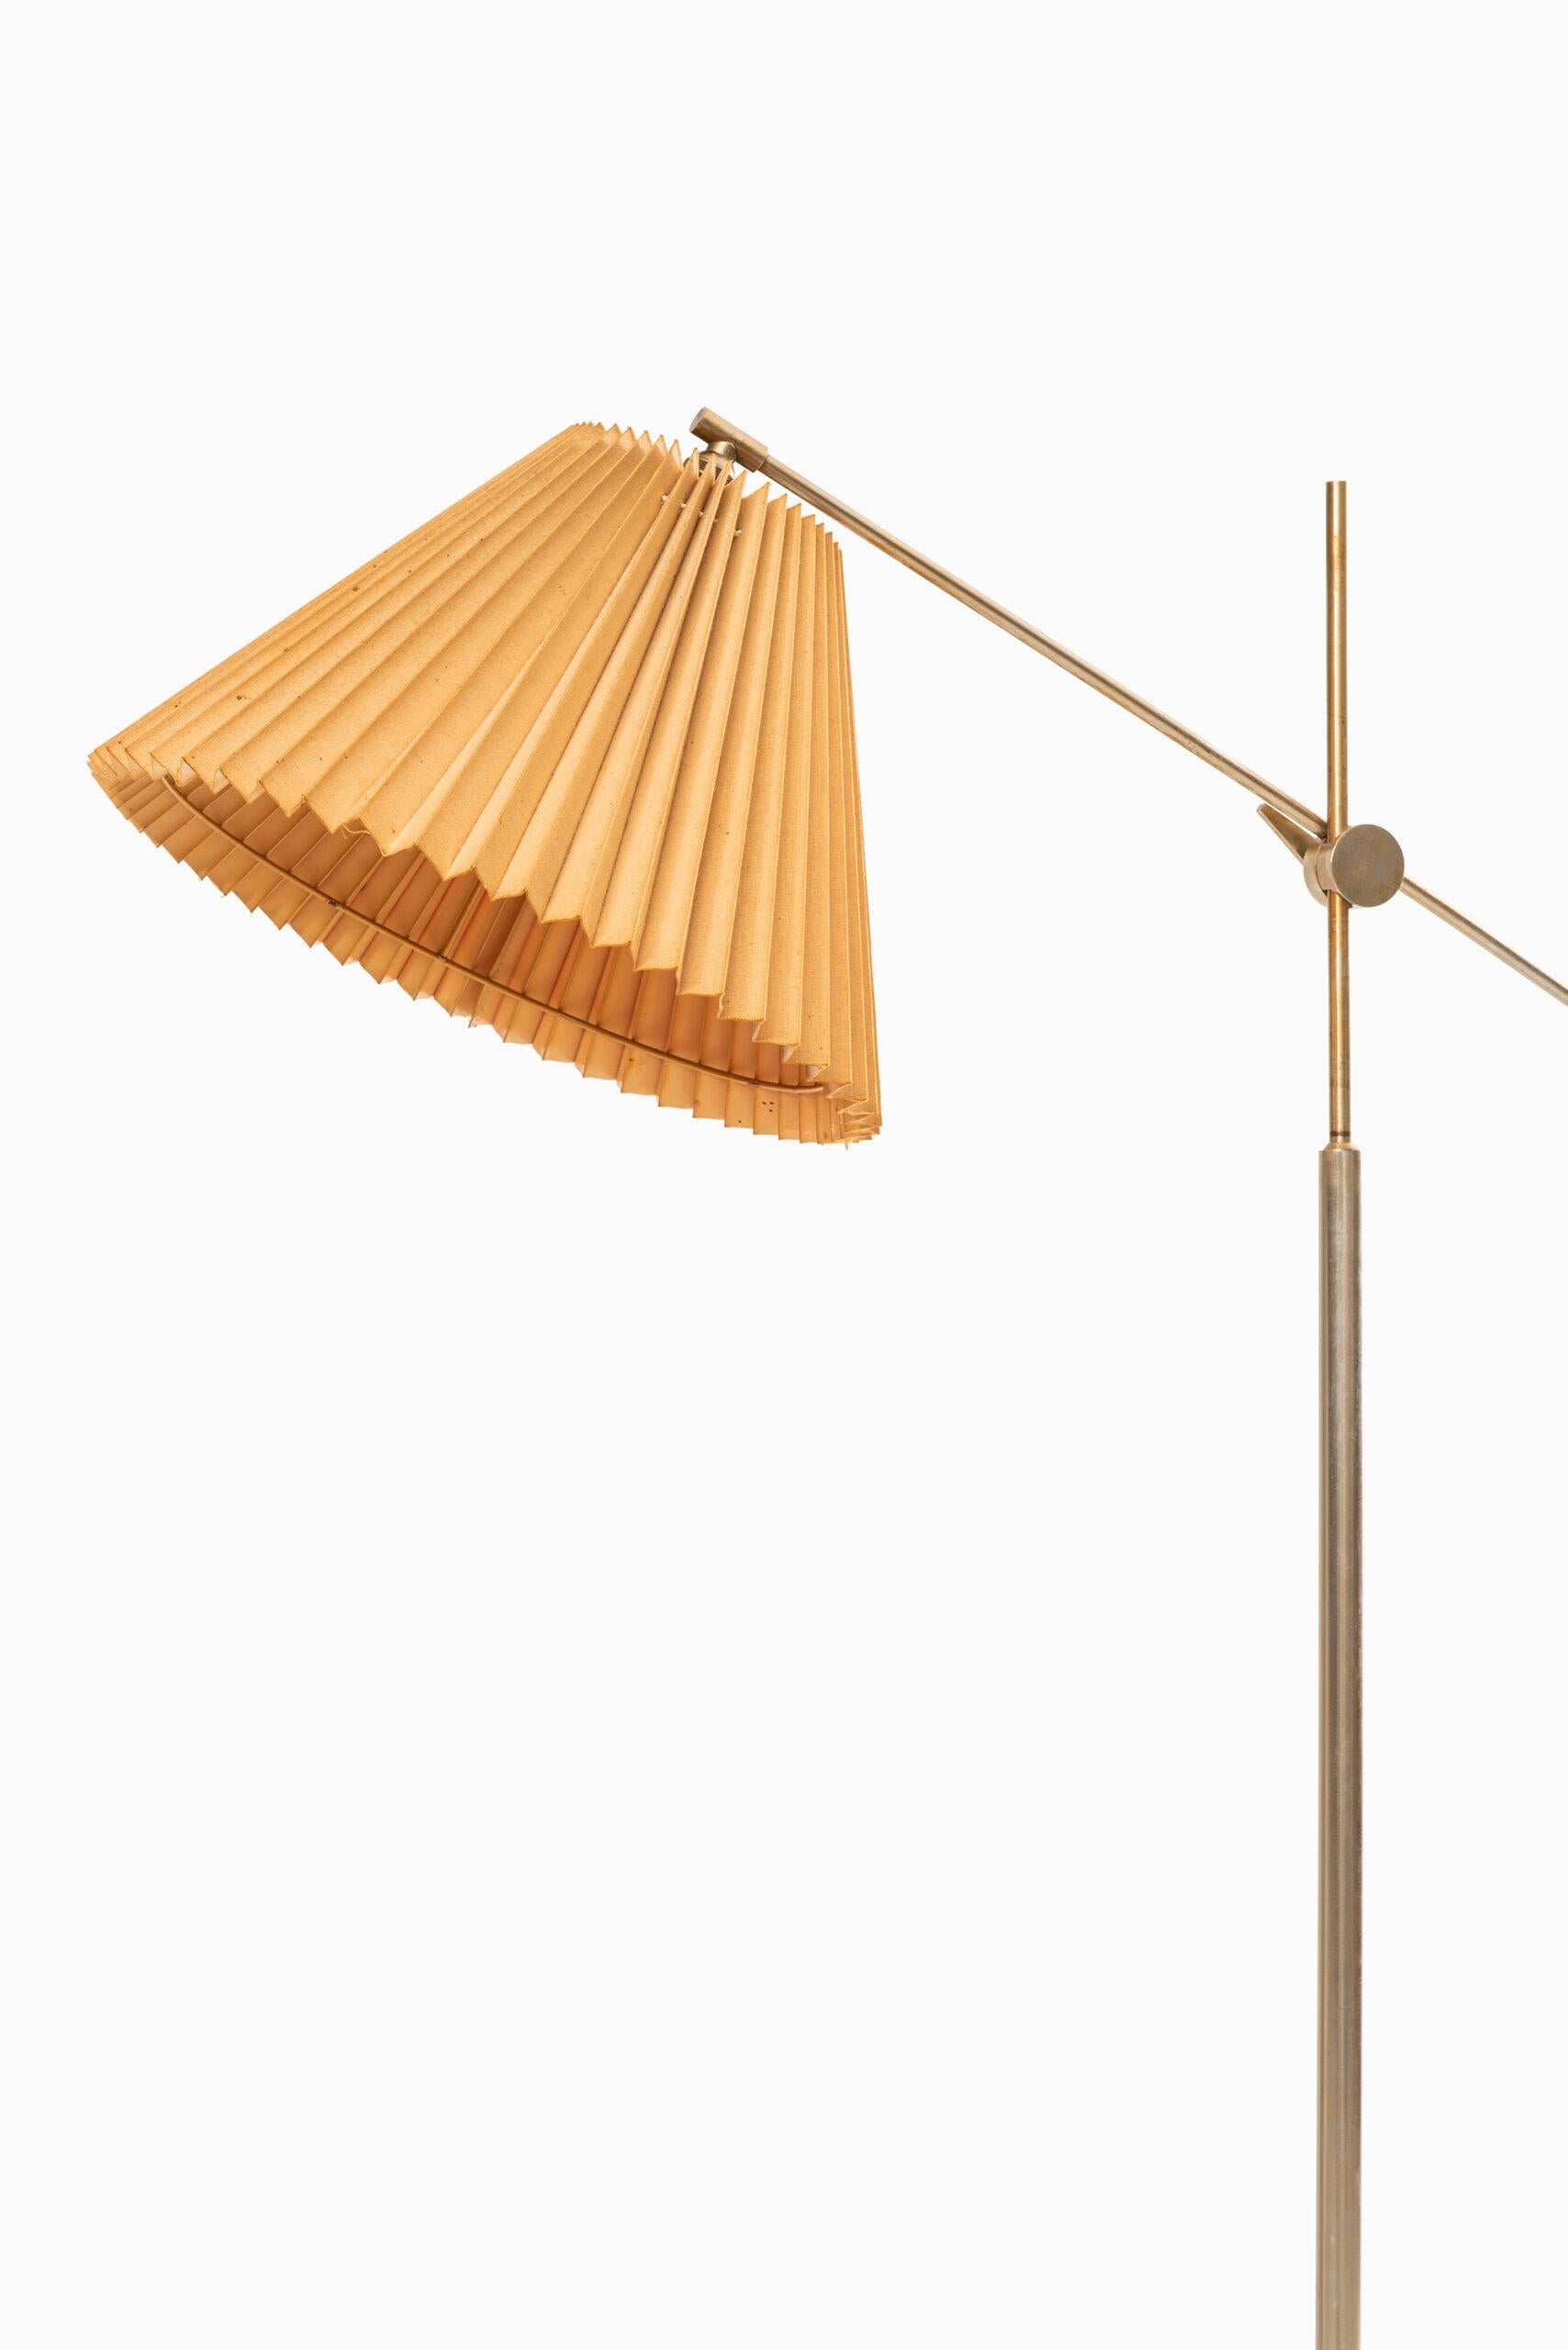 Sehr seltene Stehlampe, entworfen von Poul Dinesen. Produziert von Poul Dinesen in Dänemark.